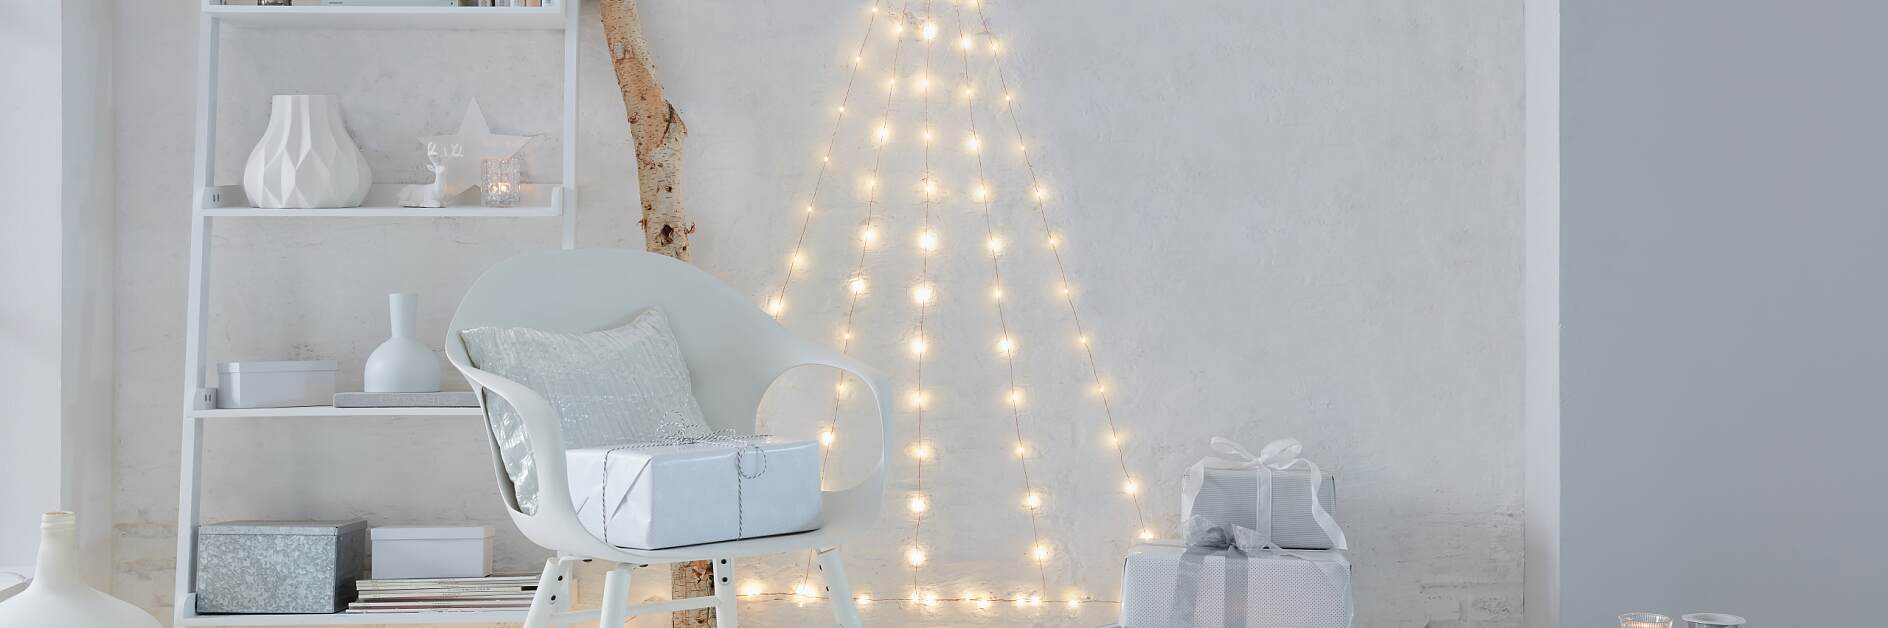 Lav dit egen LED-juletræ til at hænge på væggen!